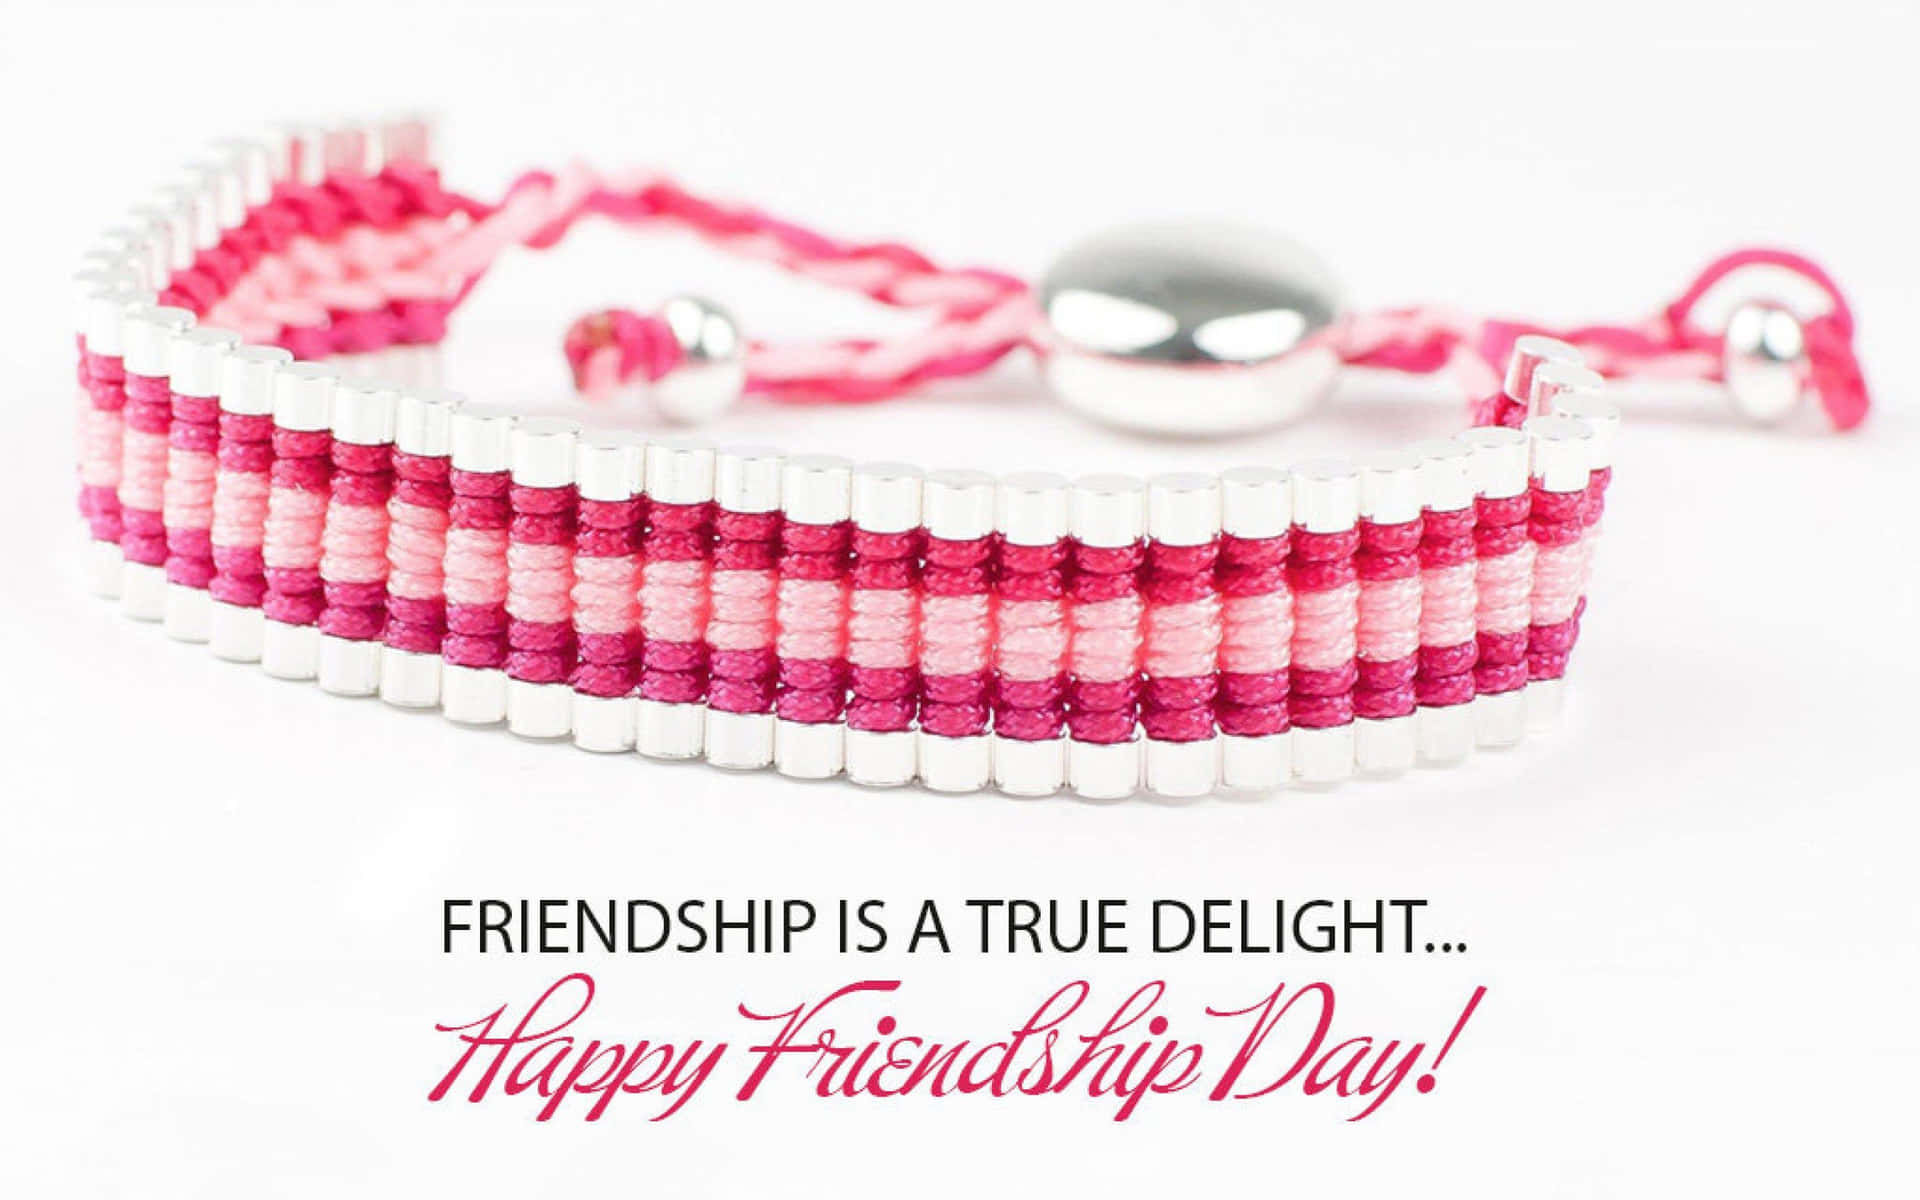 Feiernsie Ihre Freunde An Diesem Tag Der Freundschaft!